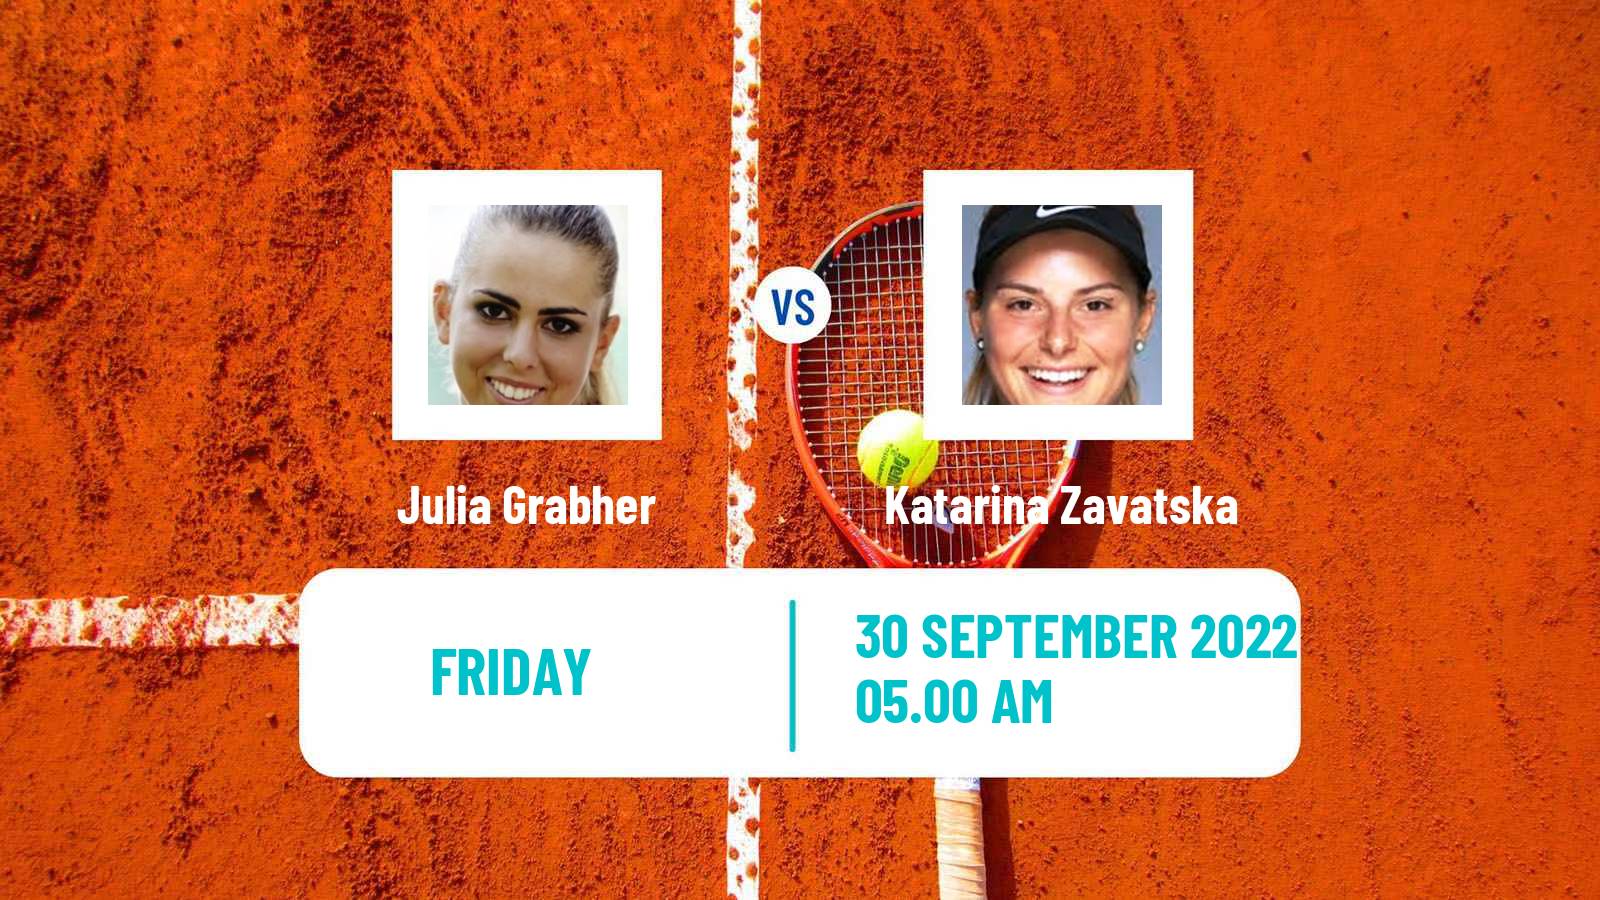 Tennis ITF Tournaments Julia Grabher - Katarina Zavatska